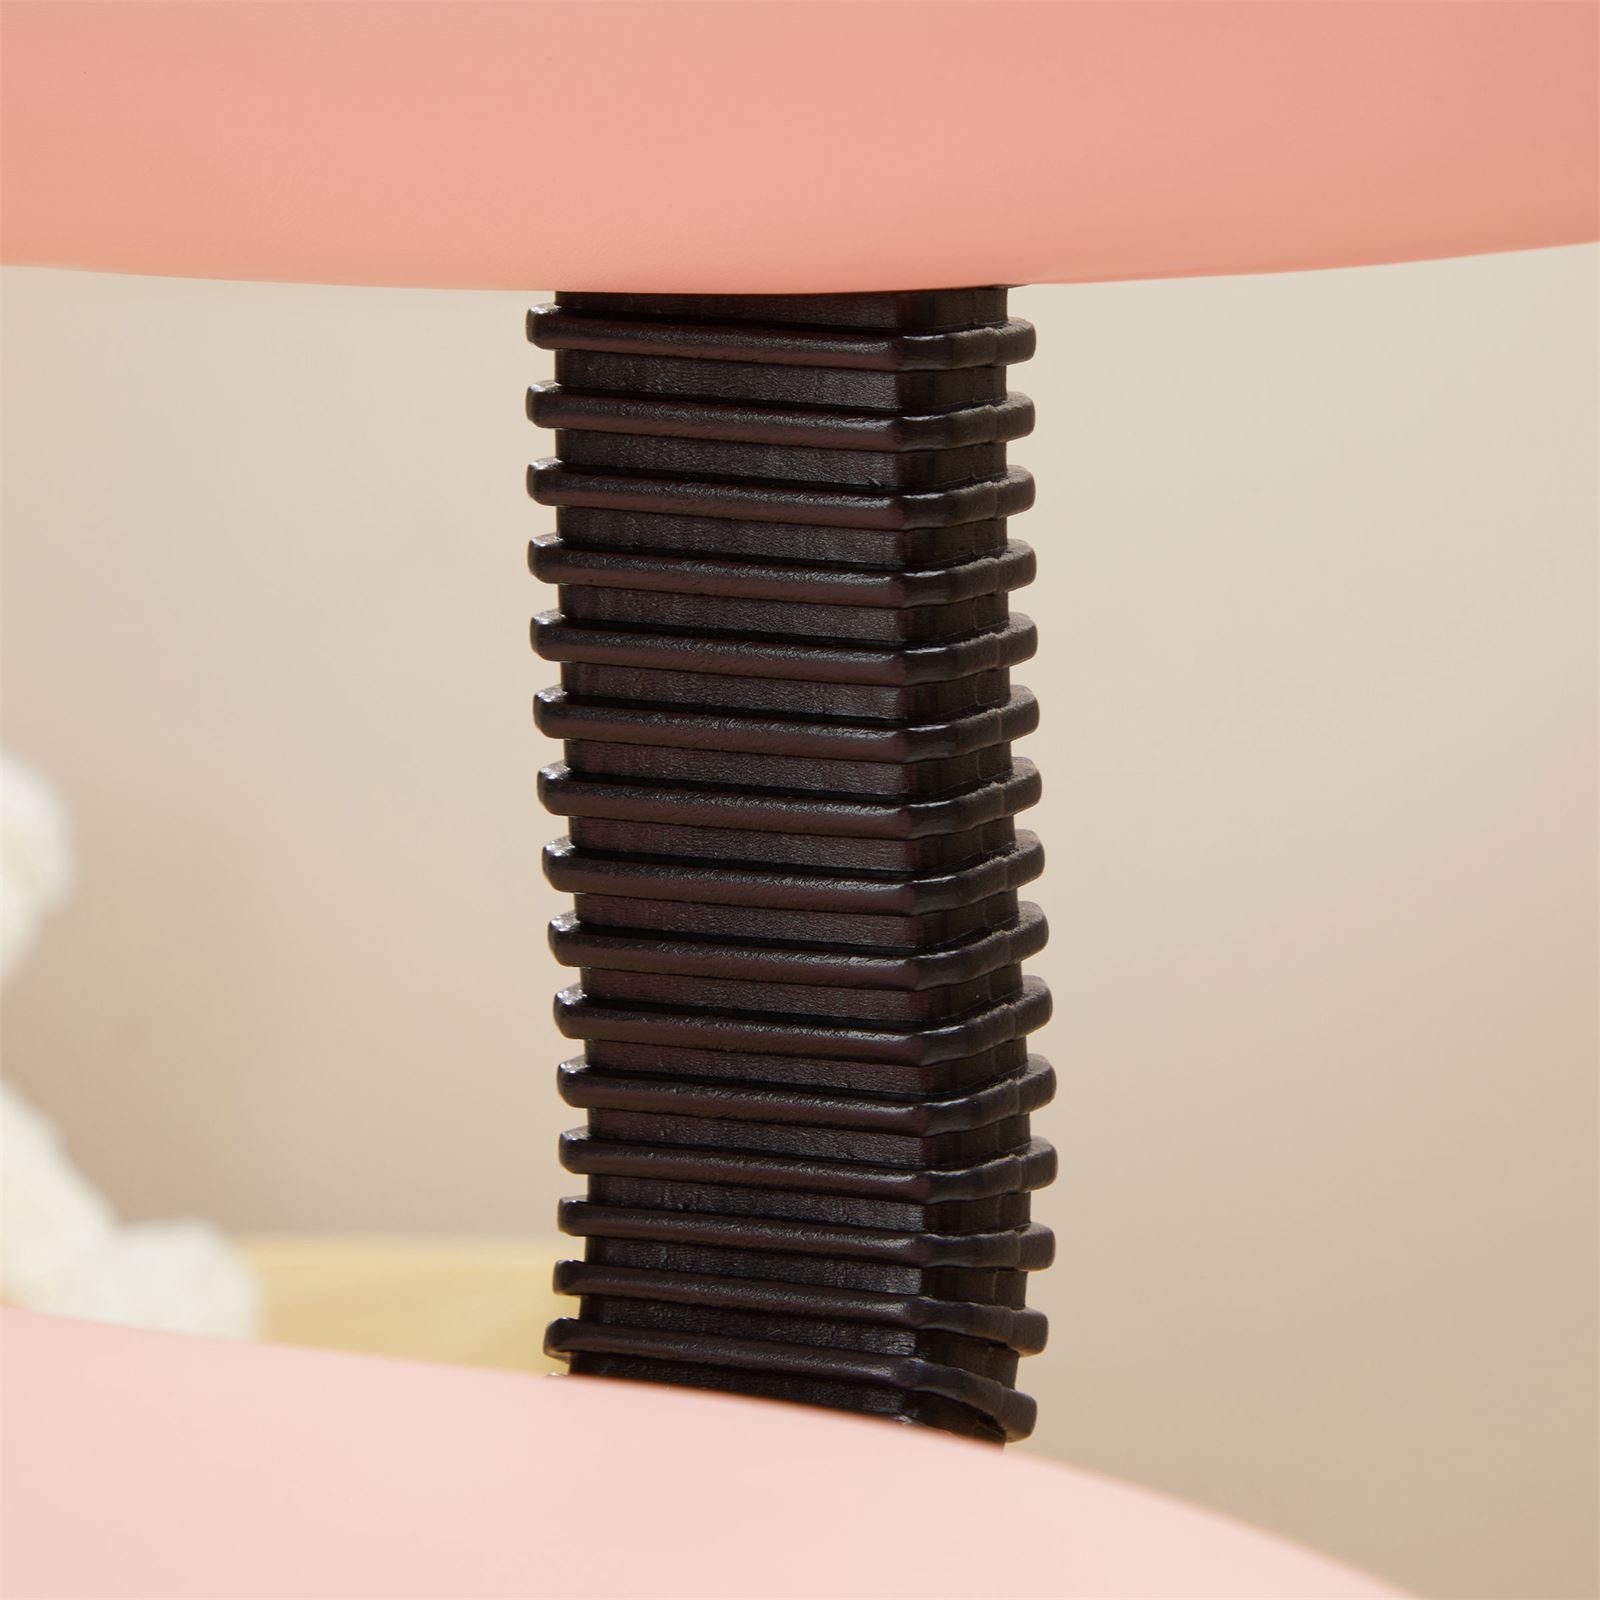 CARO-Möbel Drehstuhl Drehstuhl Bezug Kunstleder UNICORN, Kinder mit rosa höhenverstellbar Kinderdrehstuhl